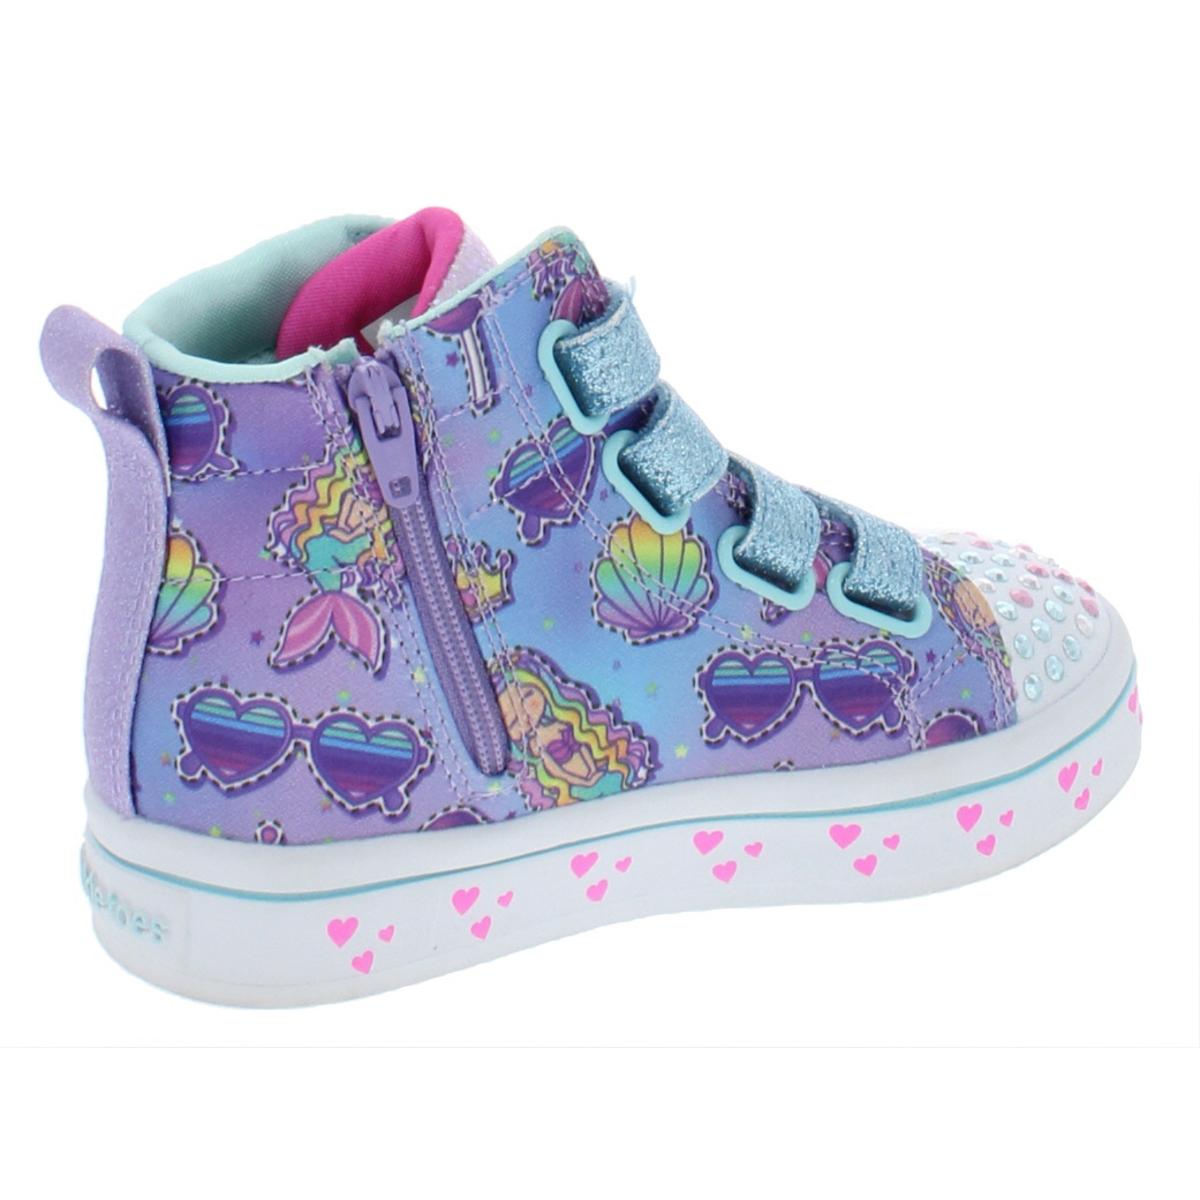 Twinkle Toes by Skechers Girls Mermaid Gems Purple High Top Sneakers ...